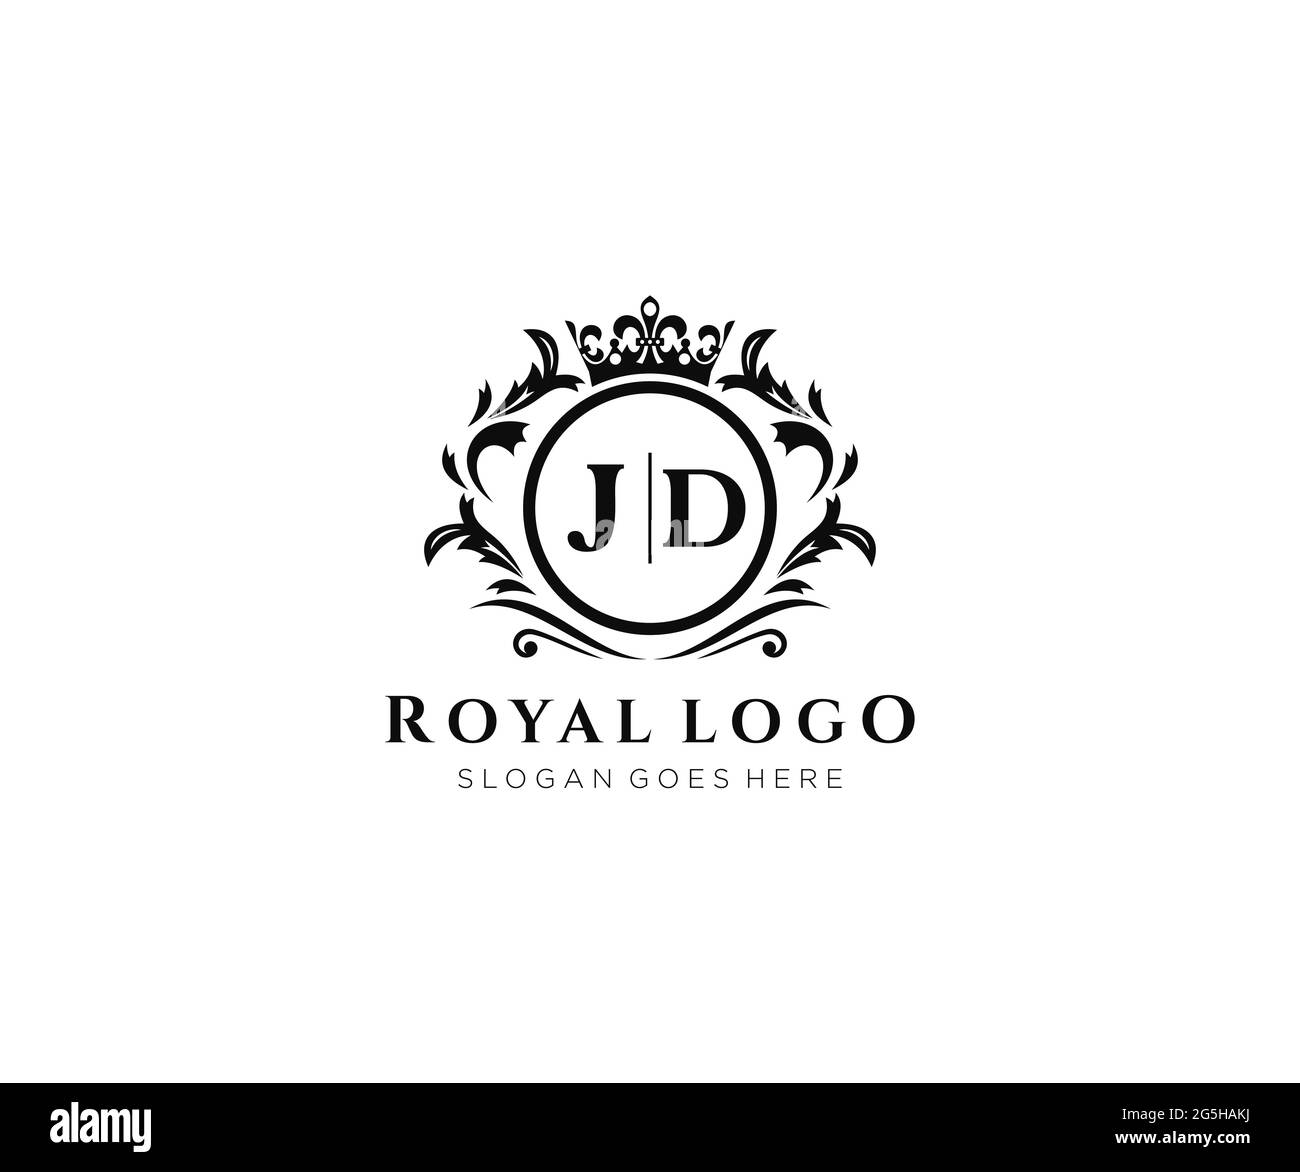 Modèle de logo de marque de luxe JD Letter, pour restaurant, Royalty,  Boutique, café, Hôtel, héraldique, bijoux, mode et autres illustrations  vectorielles Image Vectorielle Stock - Alamy